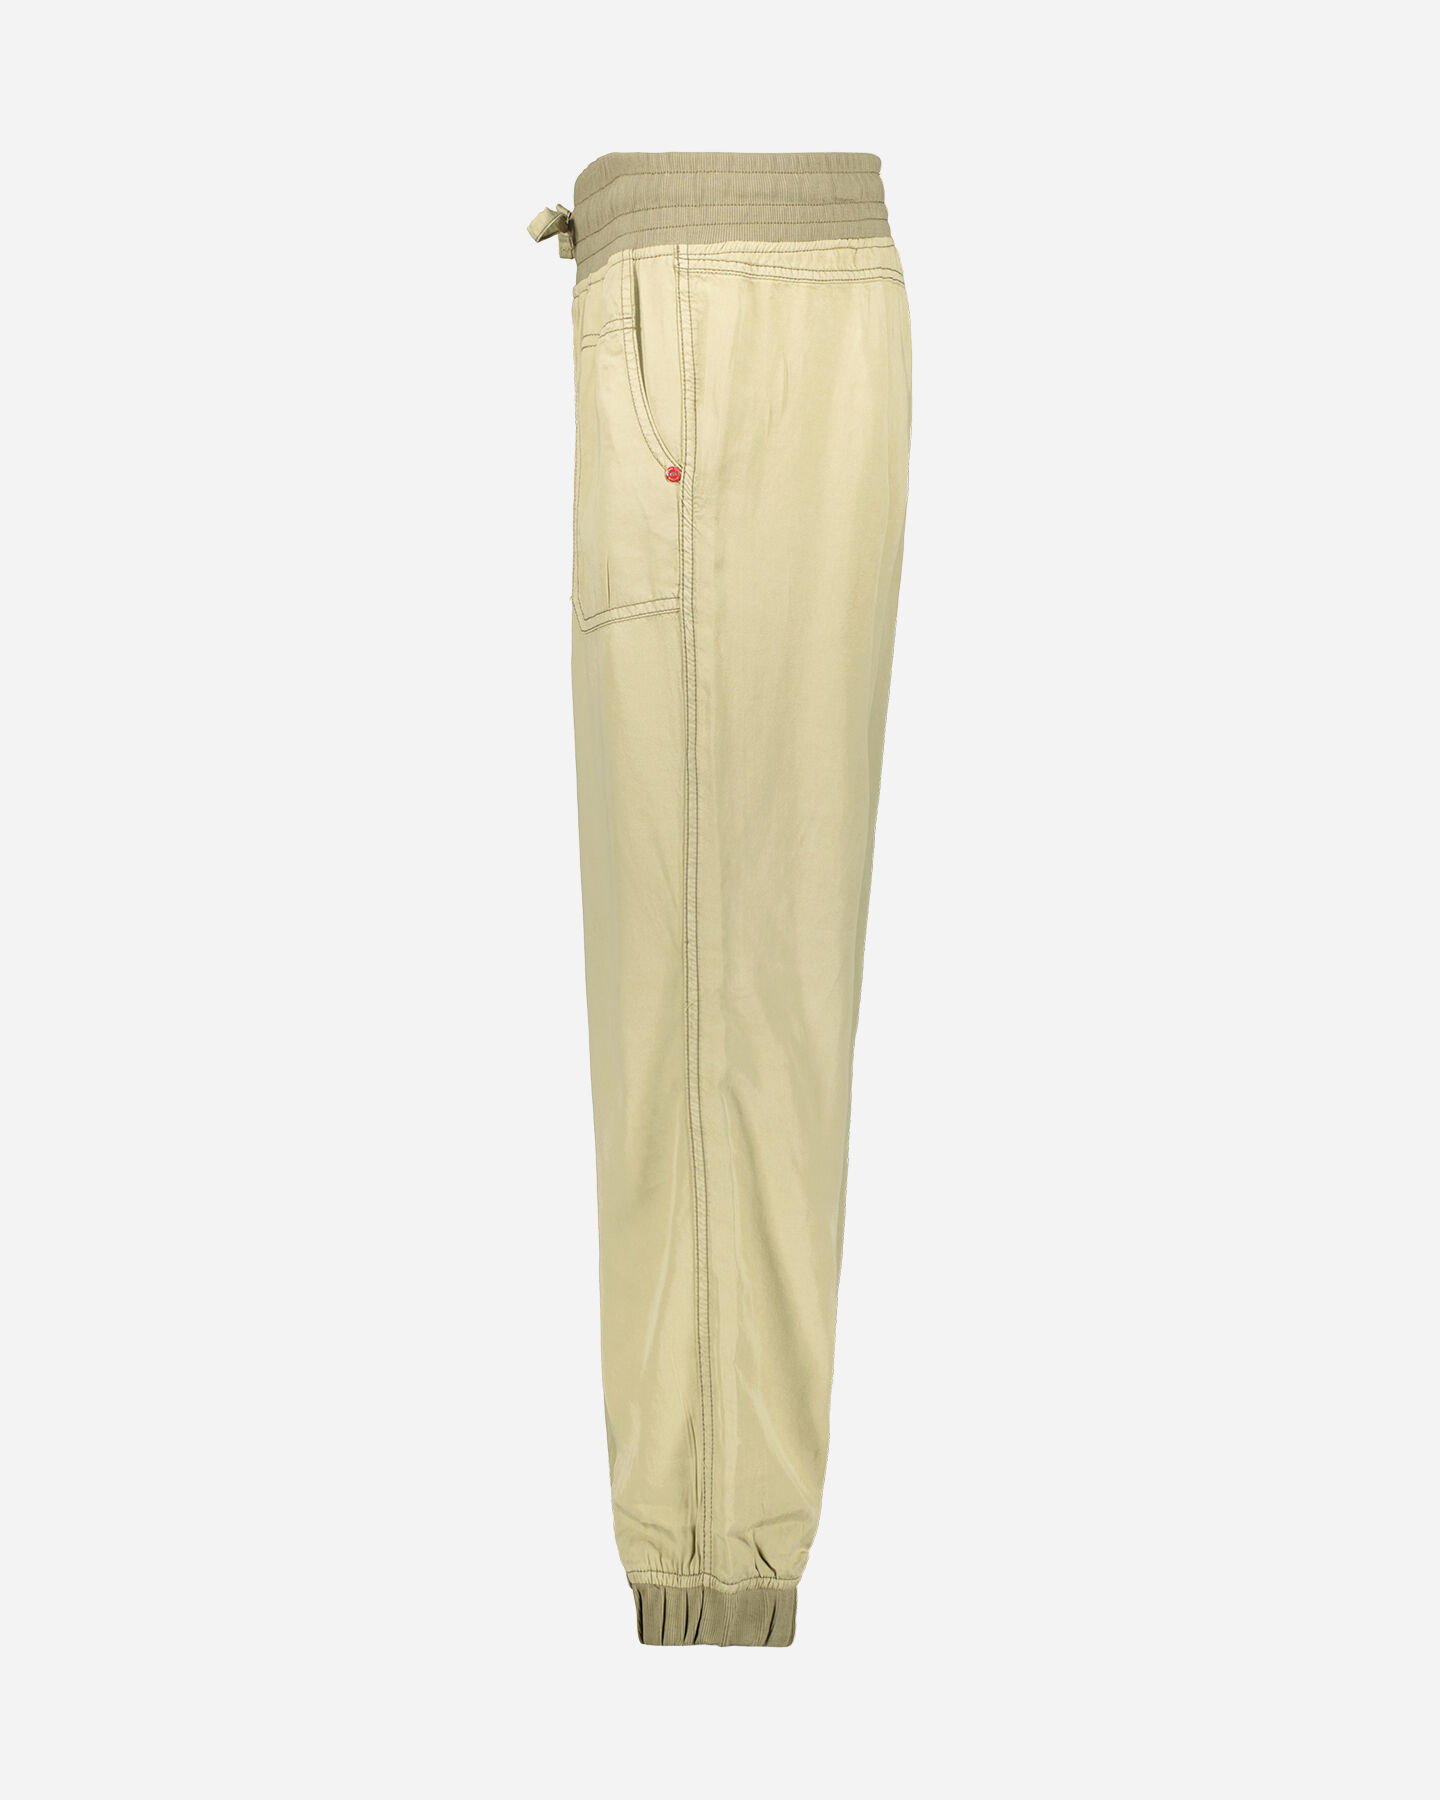  Pantalone MISTRAL TENCEL W S4100538|816|S scatto 1